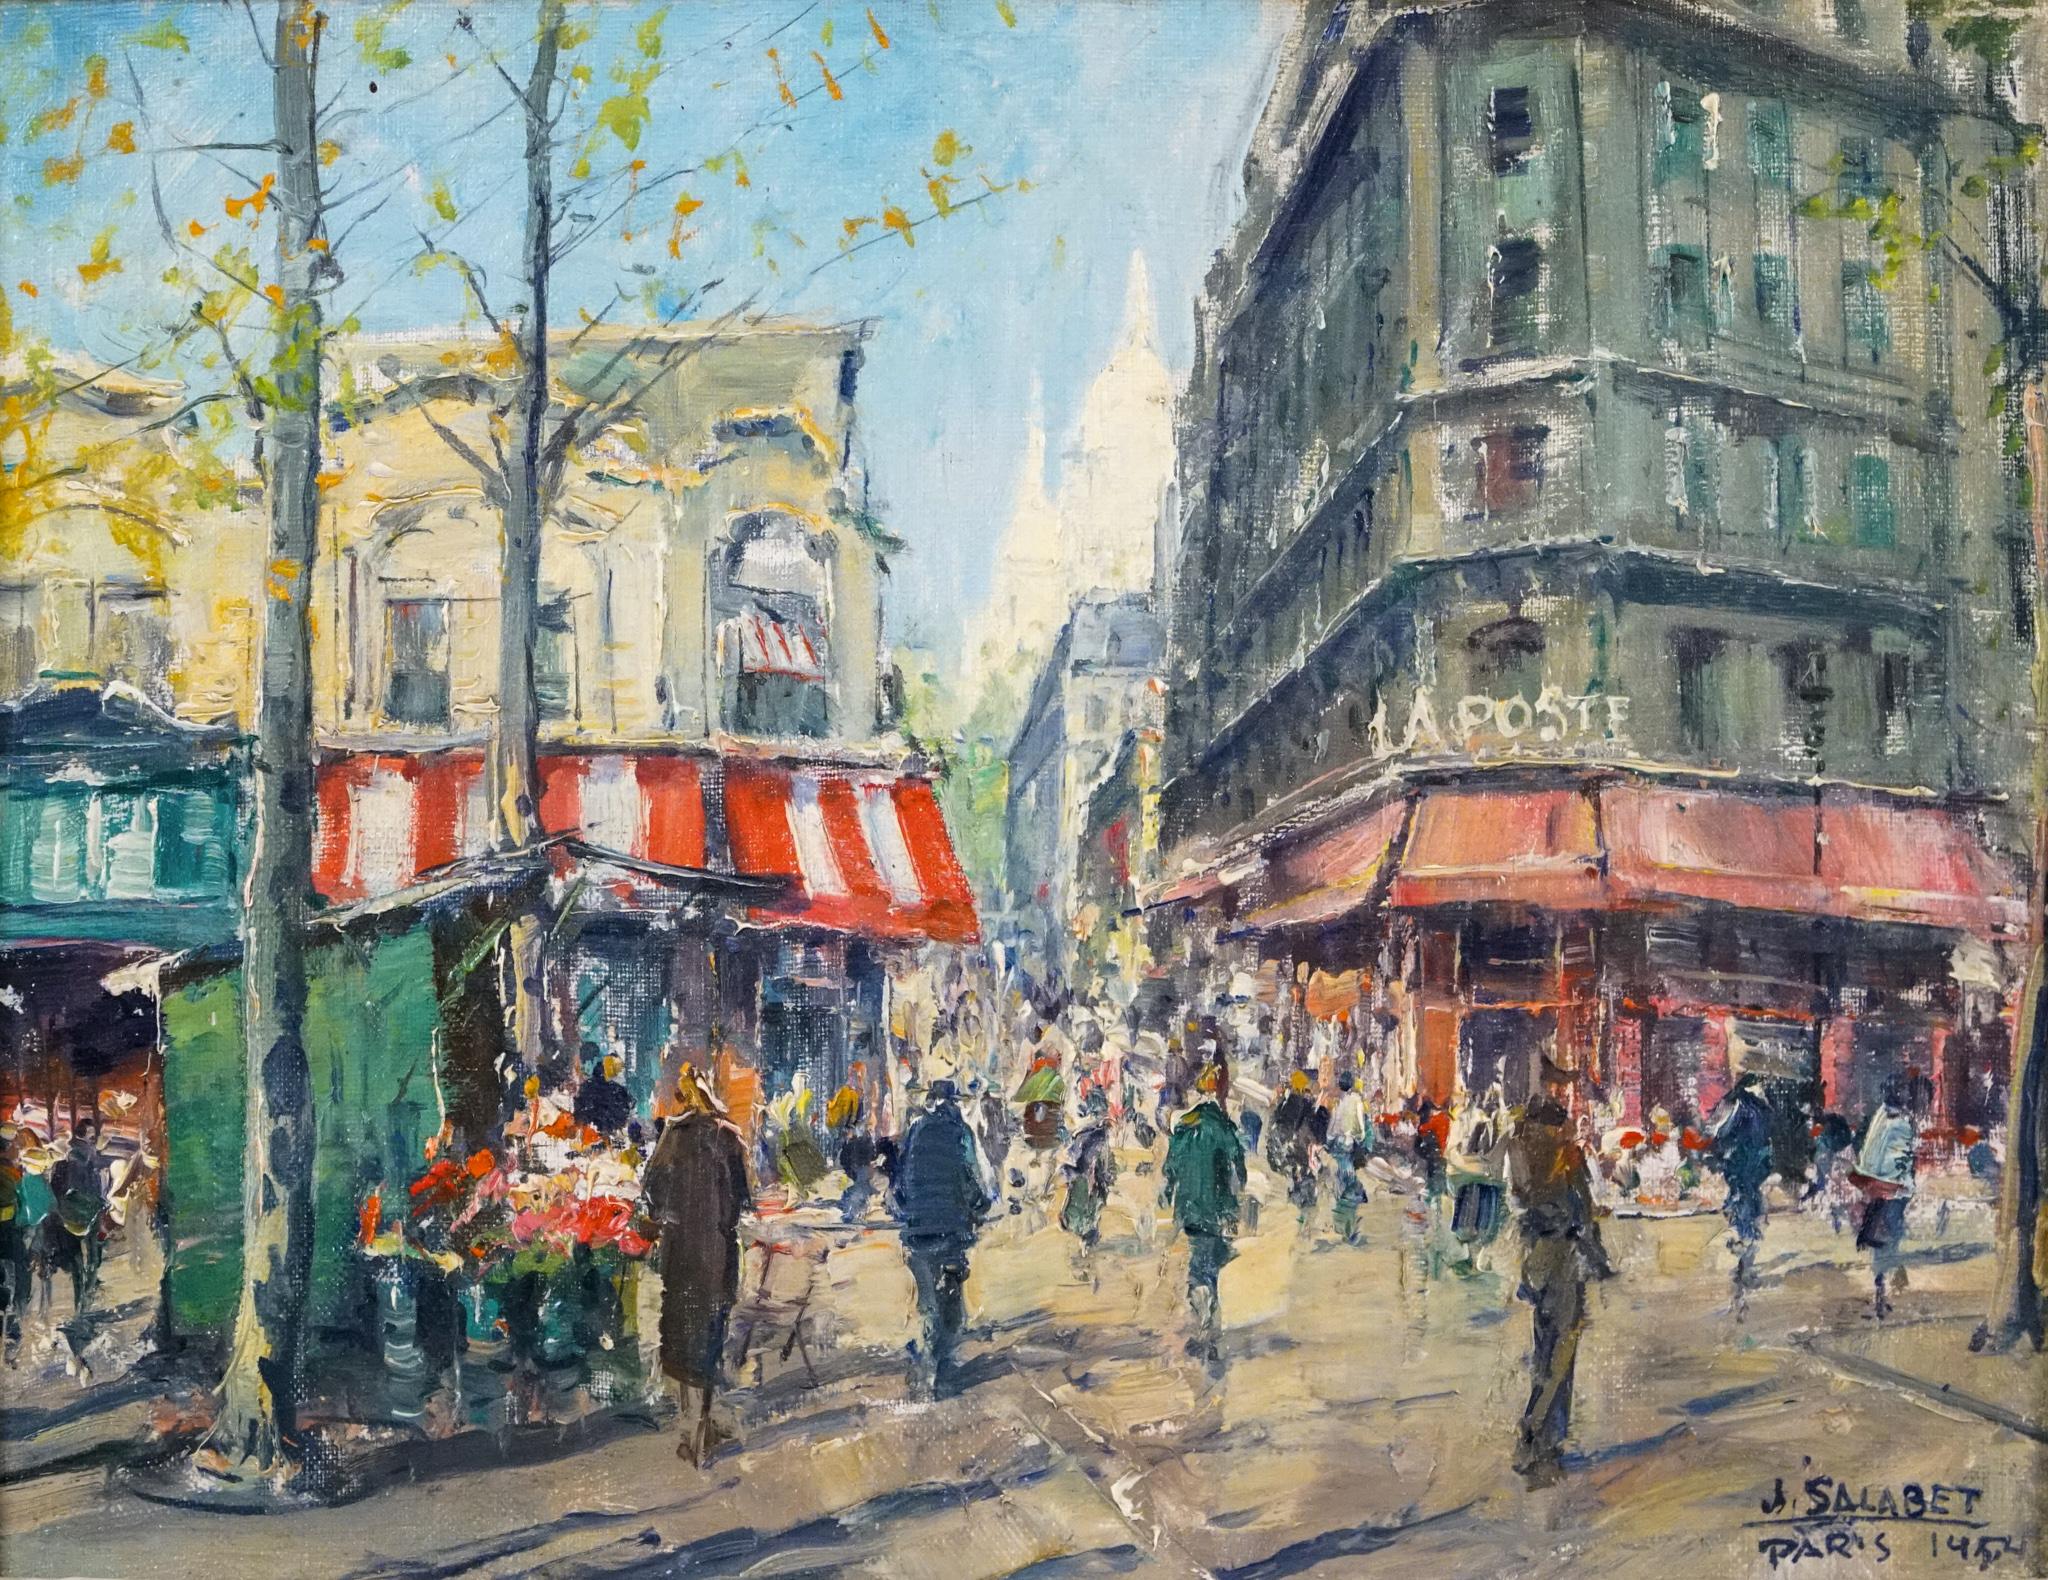 Les postes La Poste   1954  PARIS  - Scène de rue post-impressionniste - Post-impressionnisme Painting par Jean Salabet